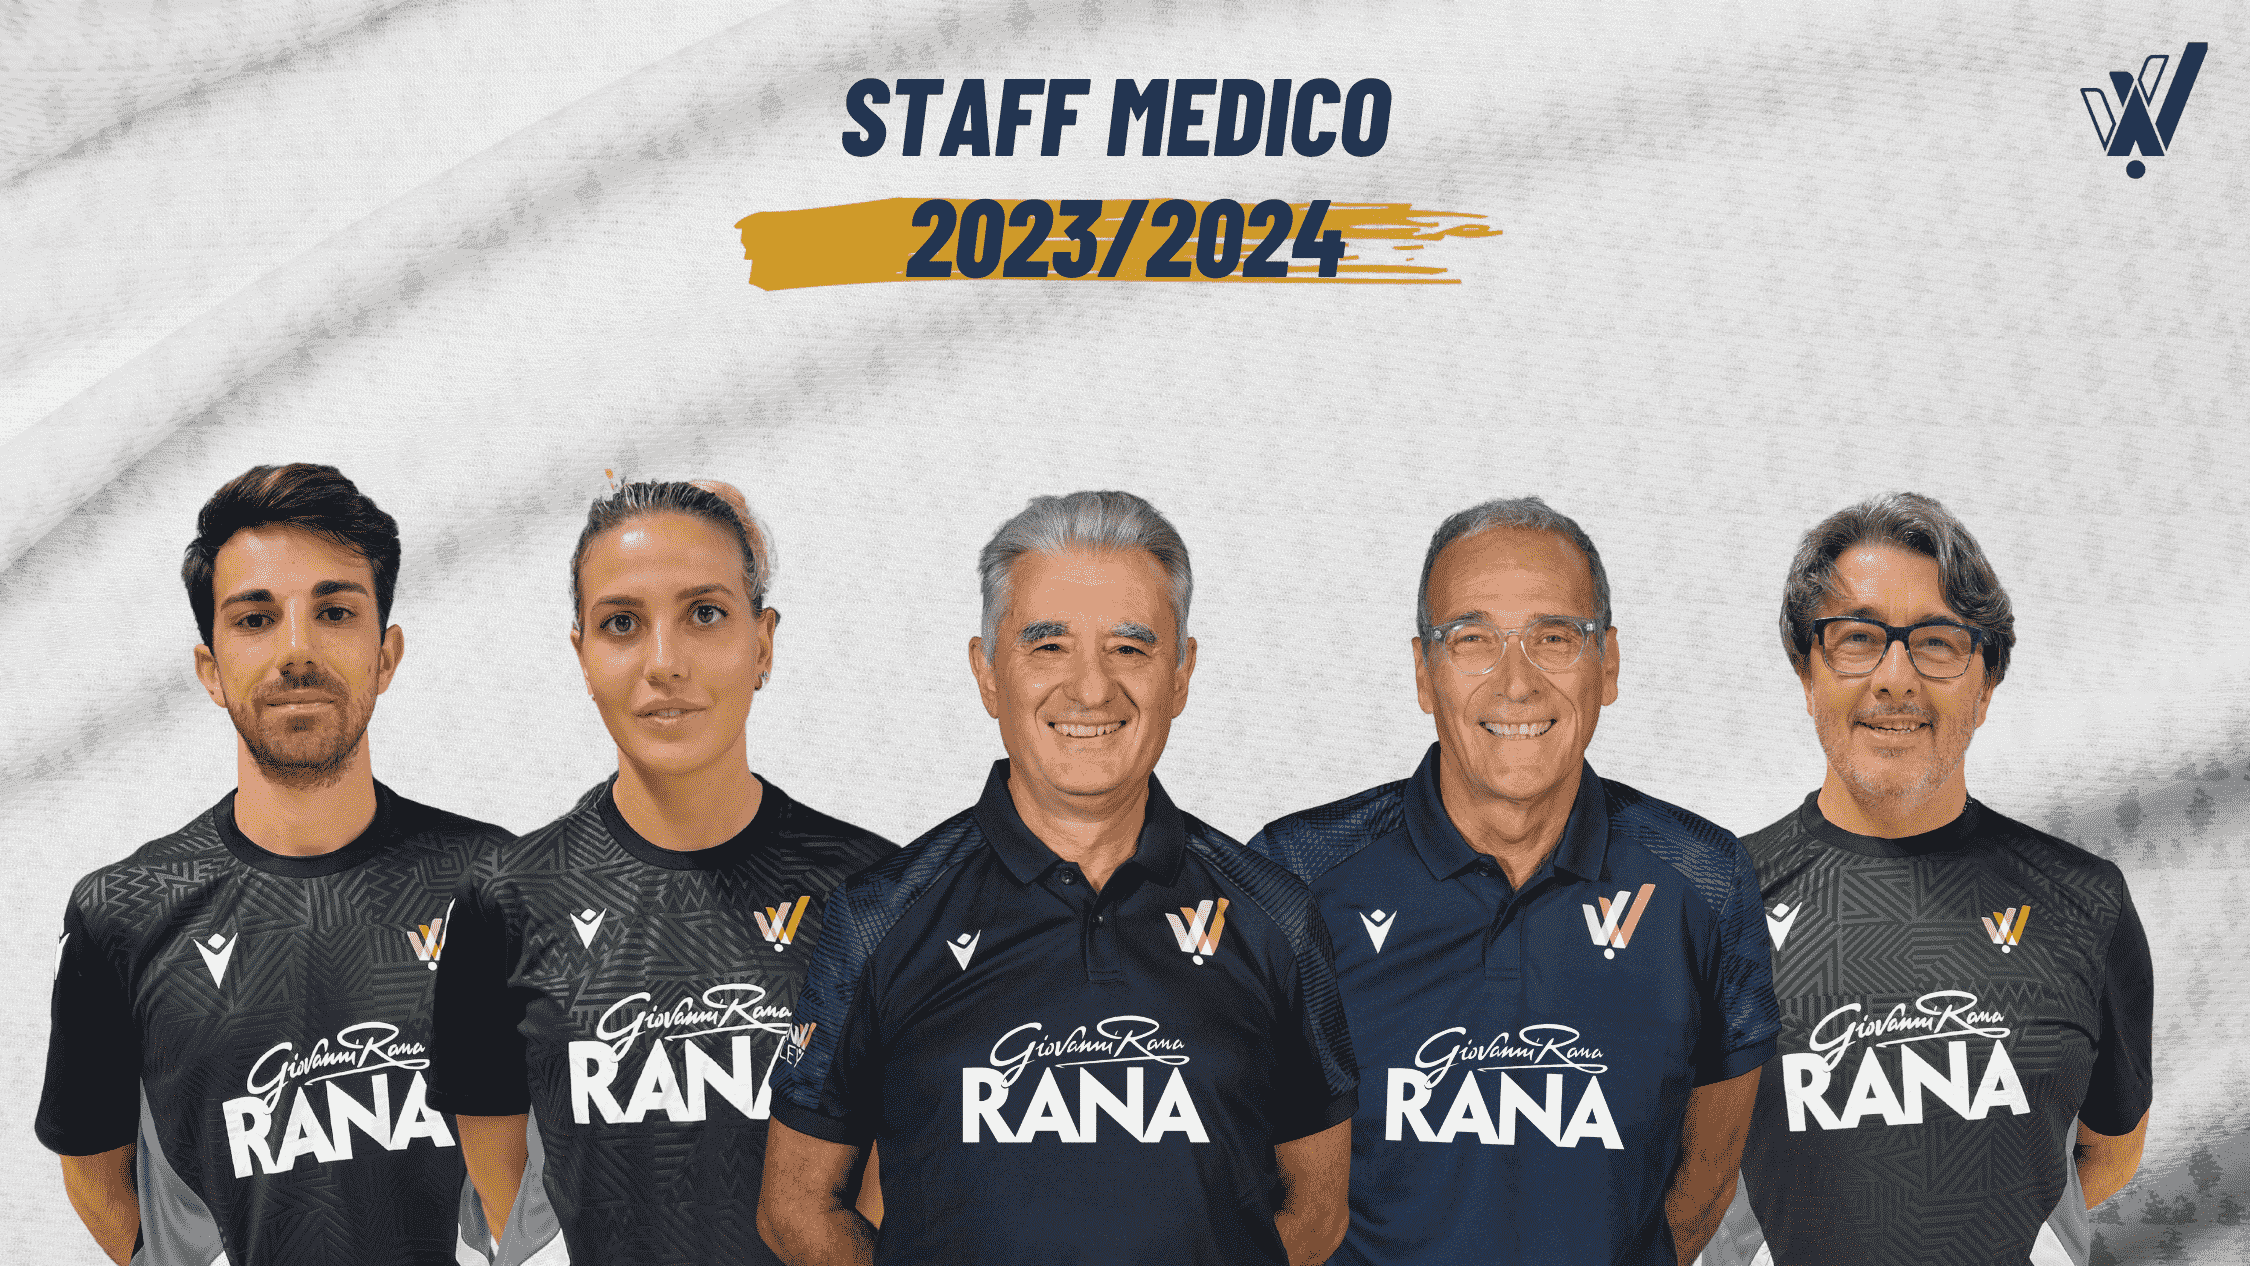 staff medico verona volley 2023 2024